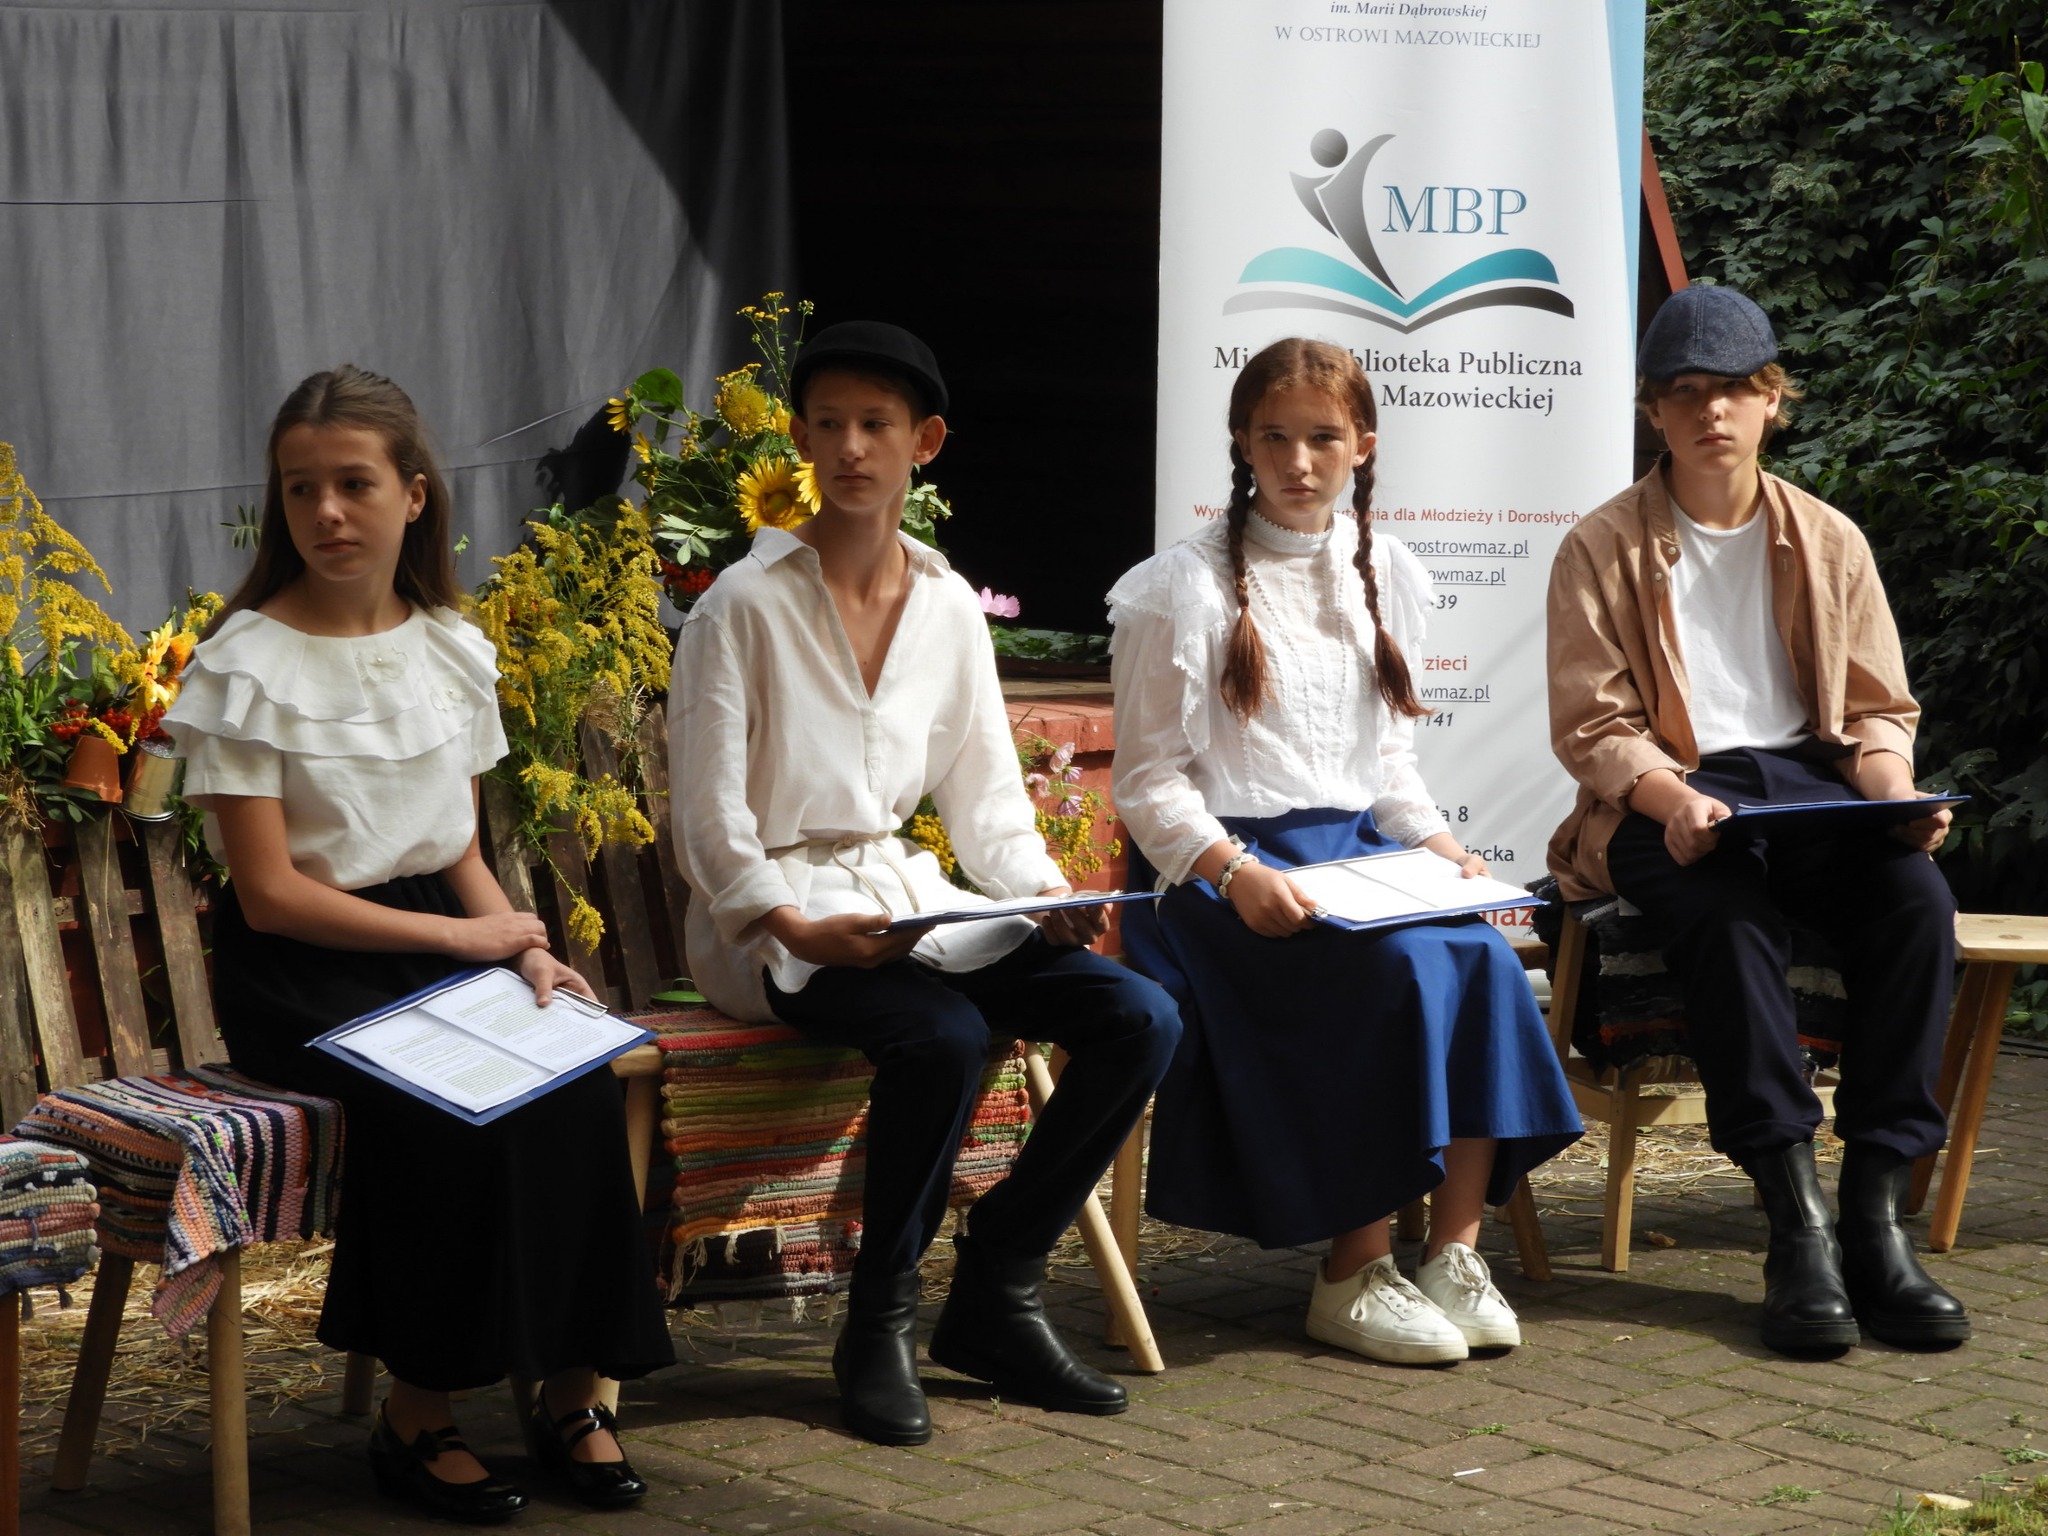 Czworo dzieci siedzących na przygotowanej scenerii czytających wybitne dzieła literatury polskiej